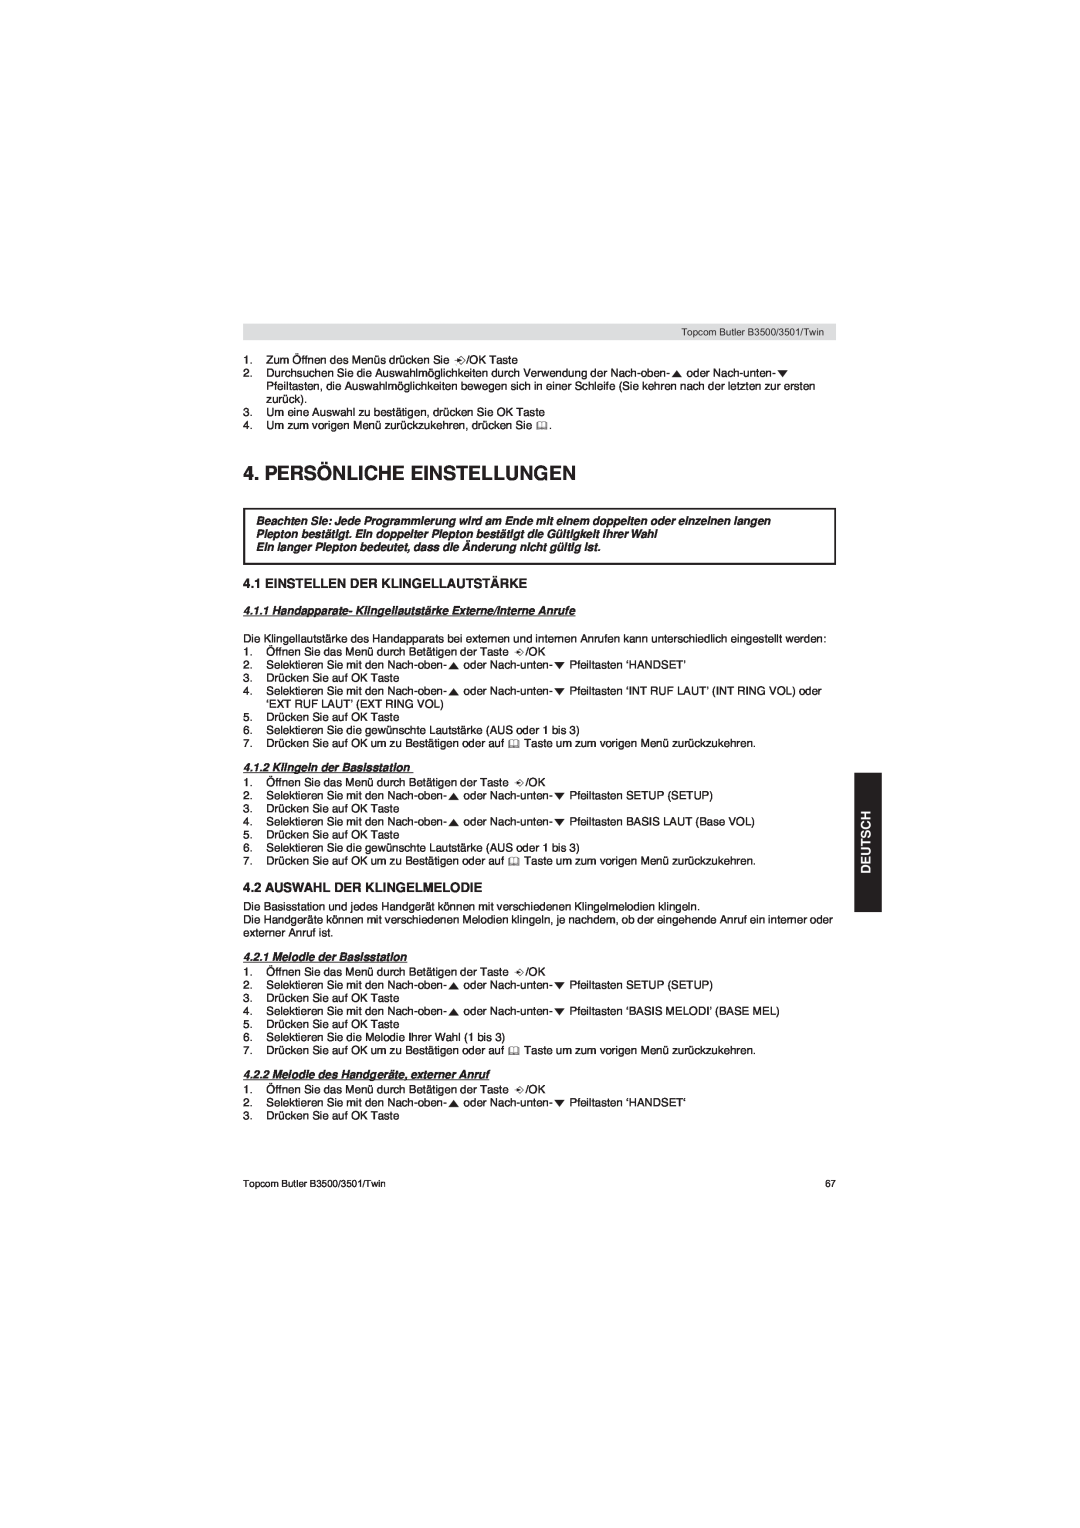 Topcom BUTLER 3500 manual Persönliche Einstellungen, Einstellen Der Klingellautstärke, Auswahl Der Klingelmelodie, Deutsch 